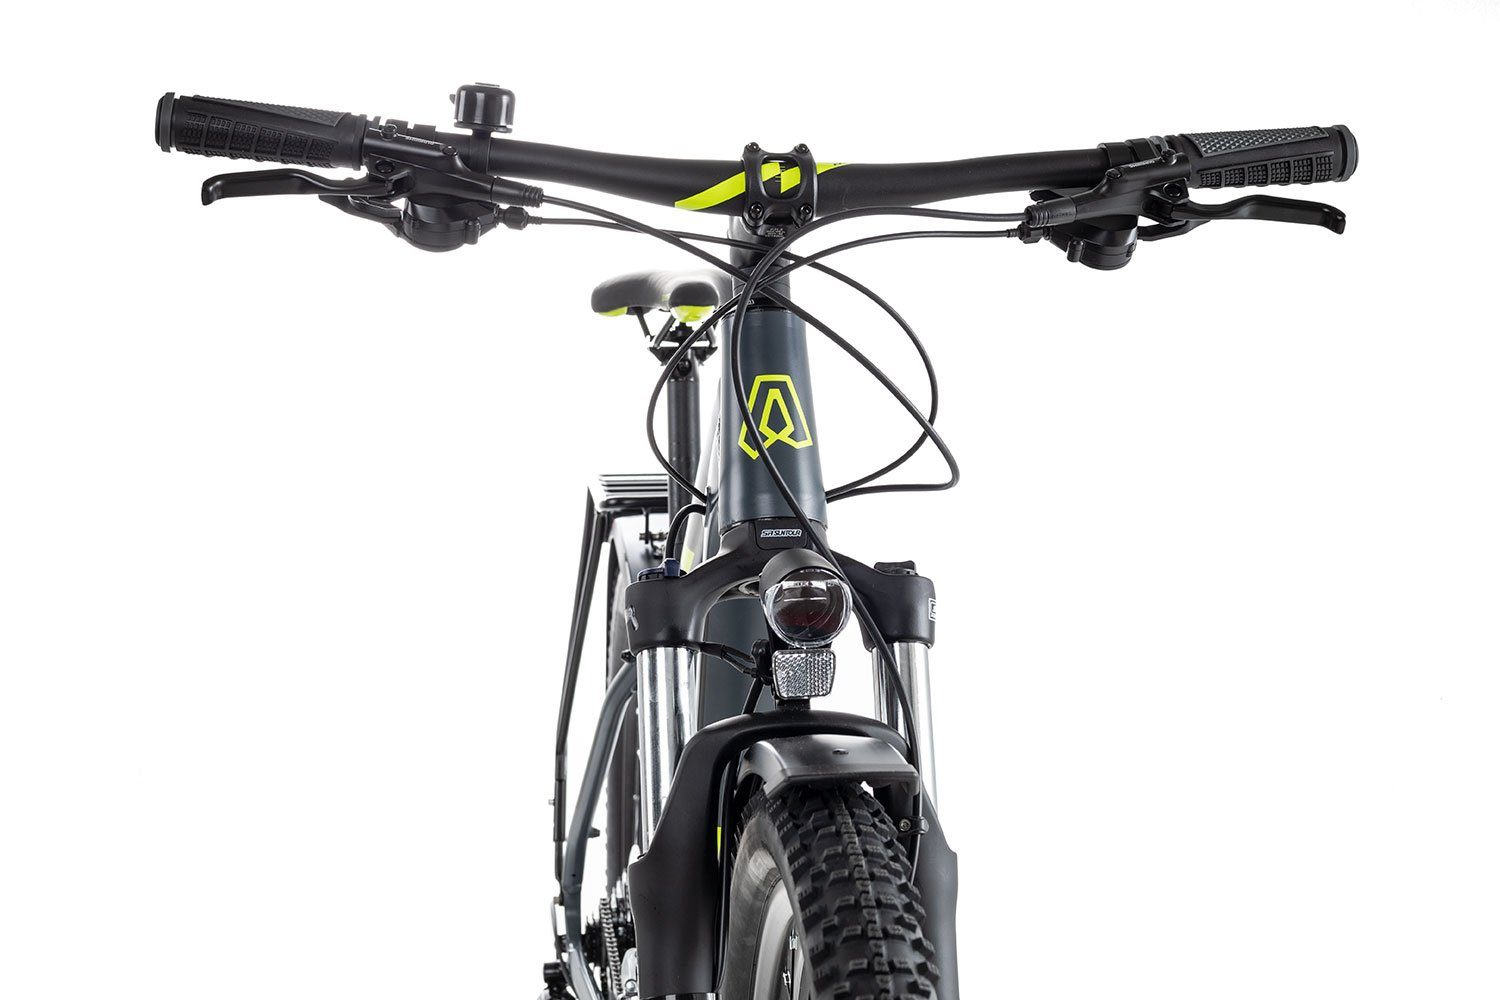 Axess Mountainbike SANDEE DX 2022, RD-M360-8 Schaltwerk, Kettenschaltung, MTB-Hardtail Gang 24 schwarz/grau Acera Shimano